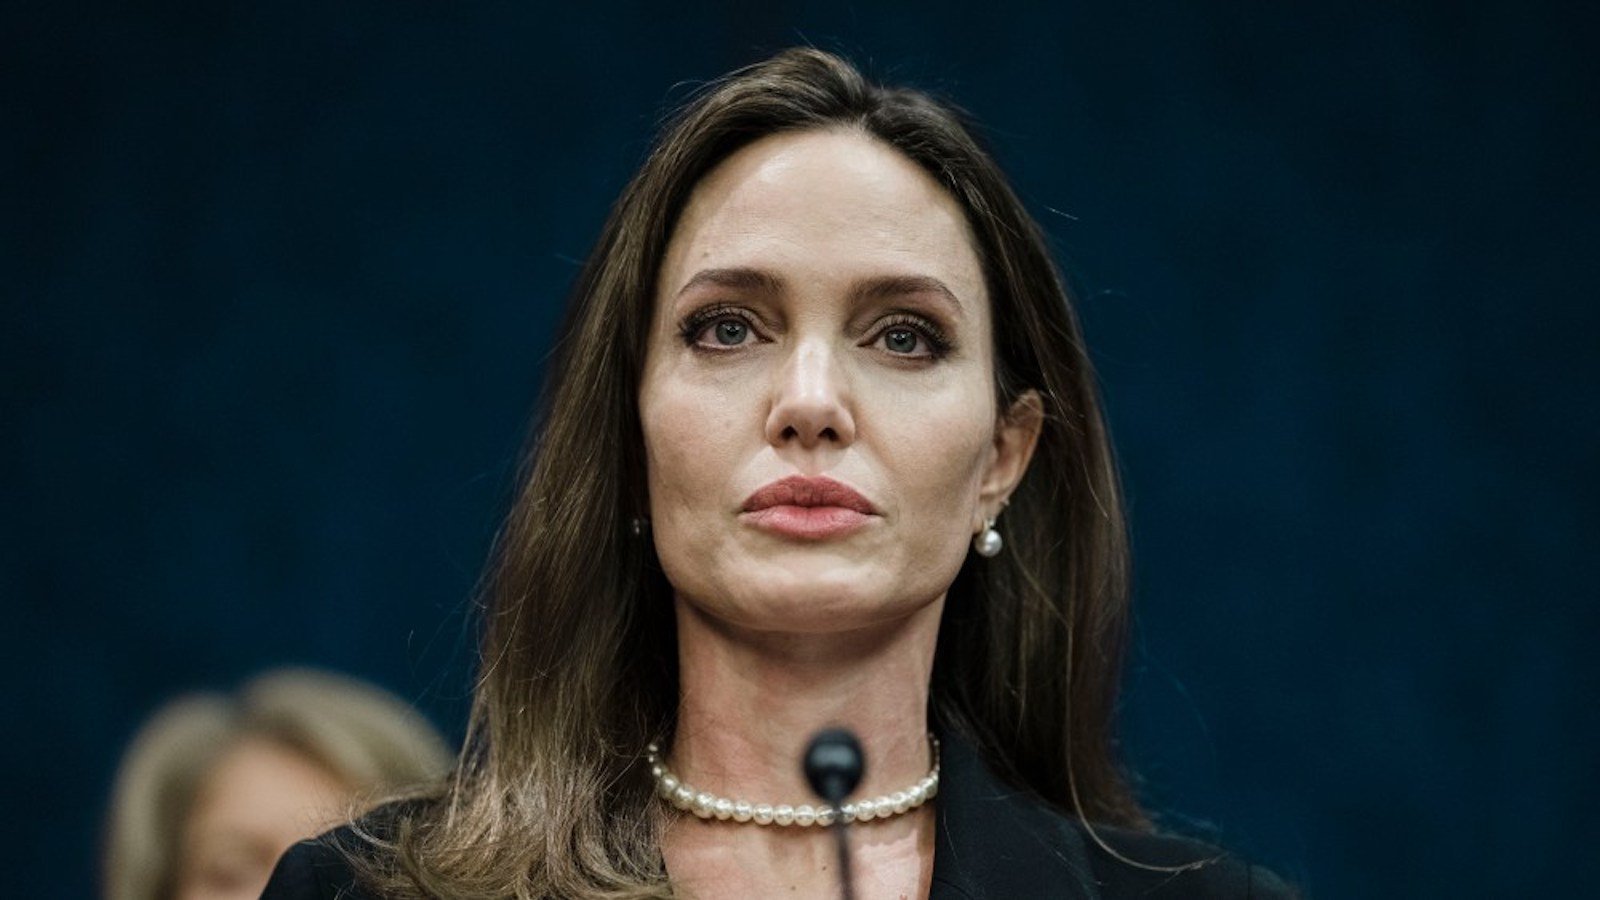 Angelina Jolie vuole lasciare Hollywood dopo il divorzio da Brad Pitt: 'Qui non sono libera di muovermi'